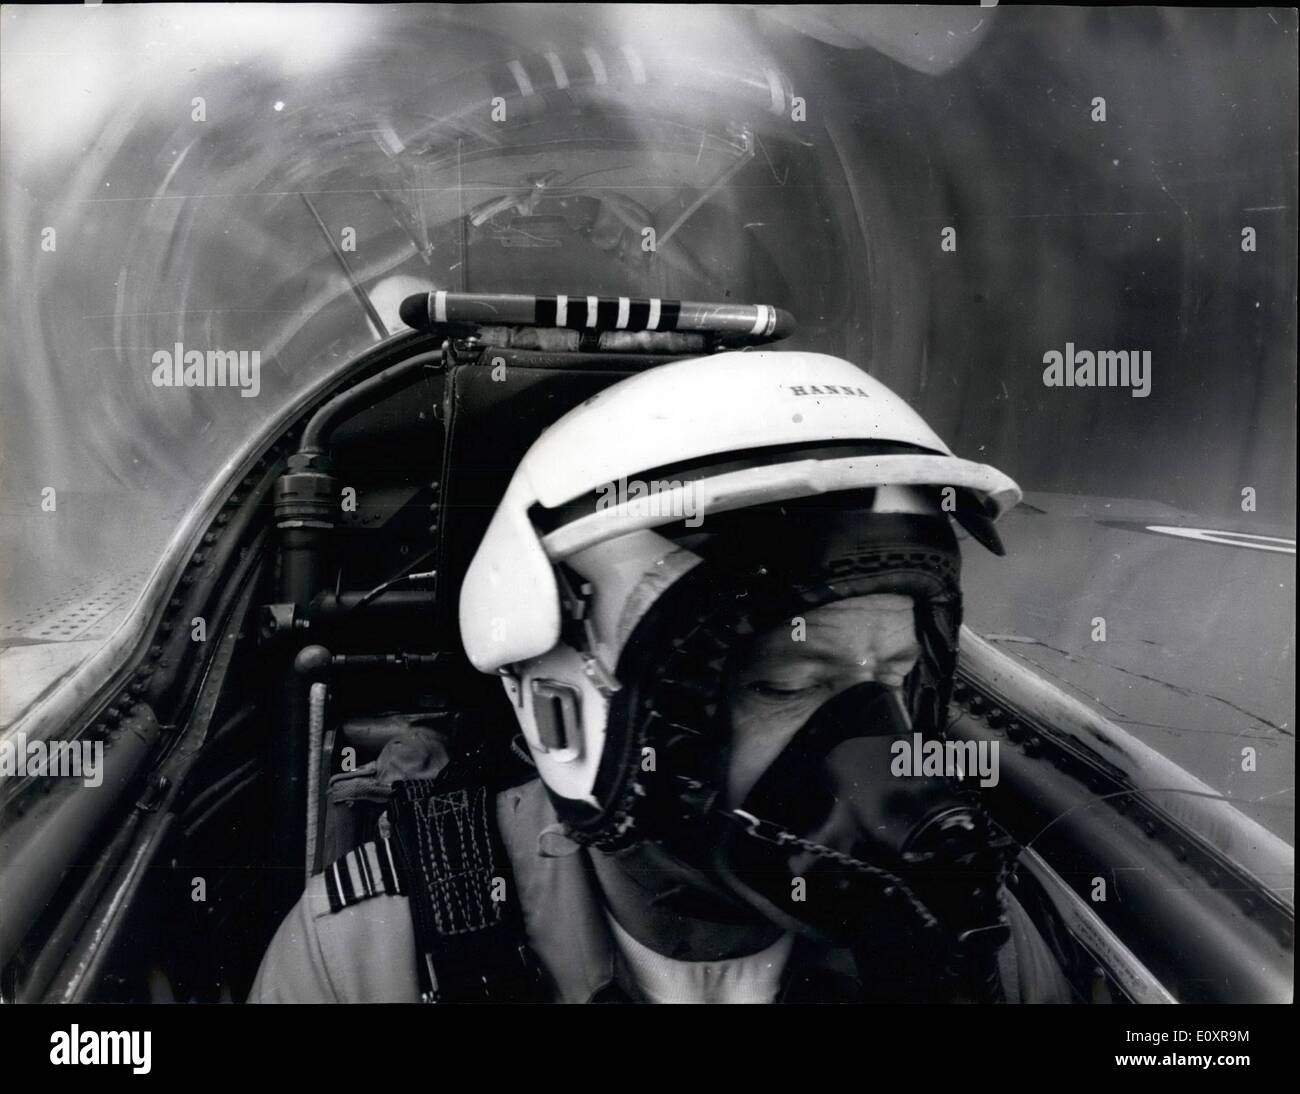 Agosto 08, 1967 - La foto che proprio non sa che il senso di. Mettere una poltrona su di esso indietro e sedersi in esso, rivolta verso il soffitto. Chiedi a qualcuno di voi di spin intorno ad almeno un giro di un secondo. Questo è qualcosa di simile all'esperienza l'uomo nella foto sta attraversando. Squadron Leader Ray Hanna, leader delle frecce rosse, la R.A.F.'s aerobatic team, è il suo rotolamento HAWKER SIDDELEY moscerino getto in una routine ''twinkle''. Per ottenere la sua immagine, il fotografo seduto nel sedile anteriore, normalmente occupata dal pilota. Egli ha detto: ''Come siamo saliti sembrava come se dieci uomini erano mi tiro indietro Foto Stock